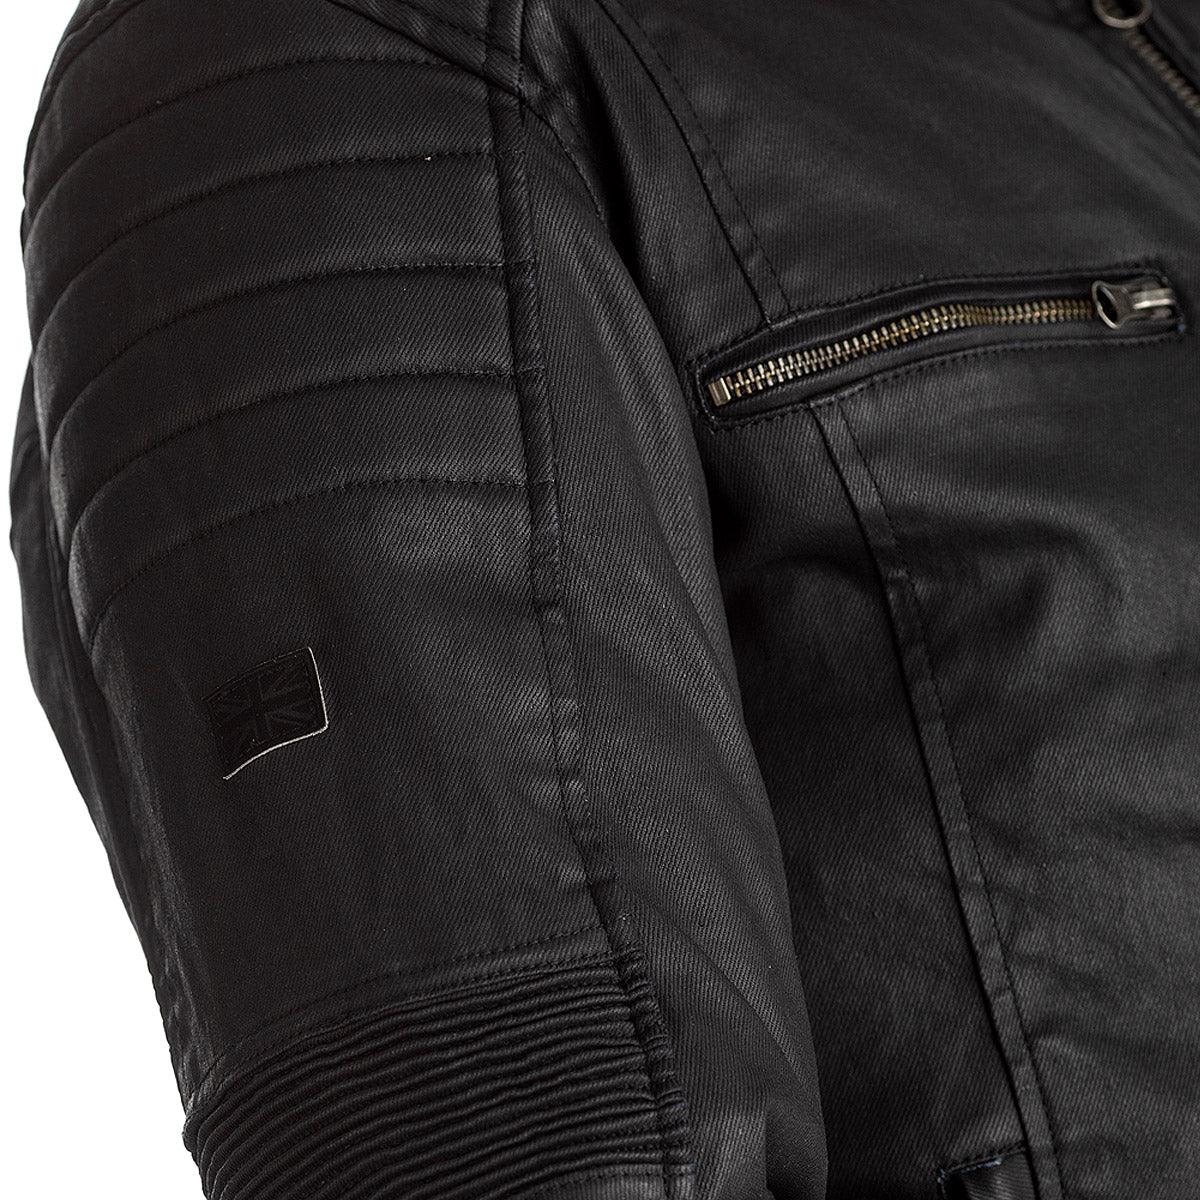 RST Brixton Wax Textile Jacket CE WP Retro Motorcycle Jacket - Motorcycle Clothing